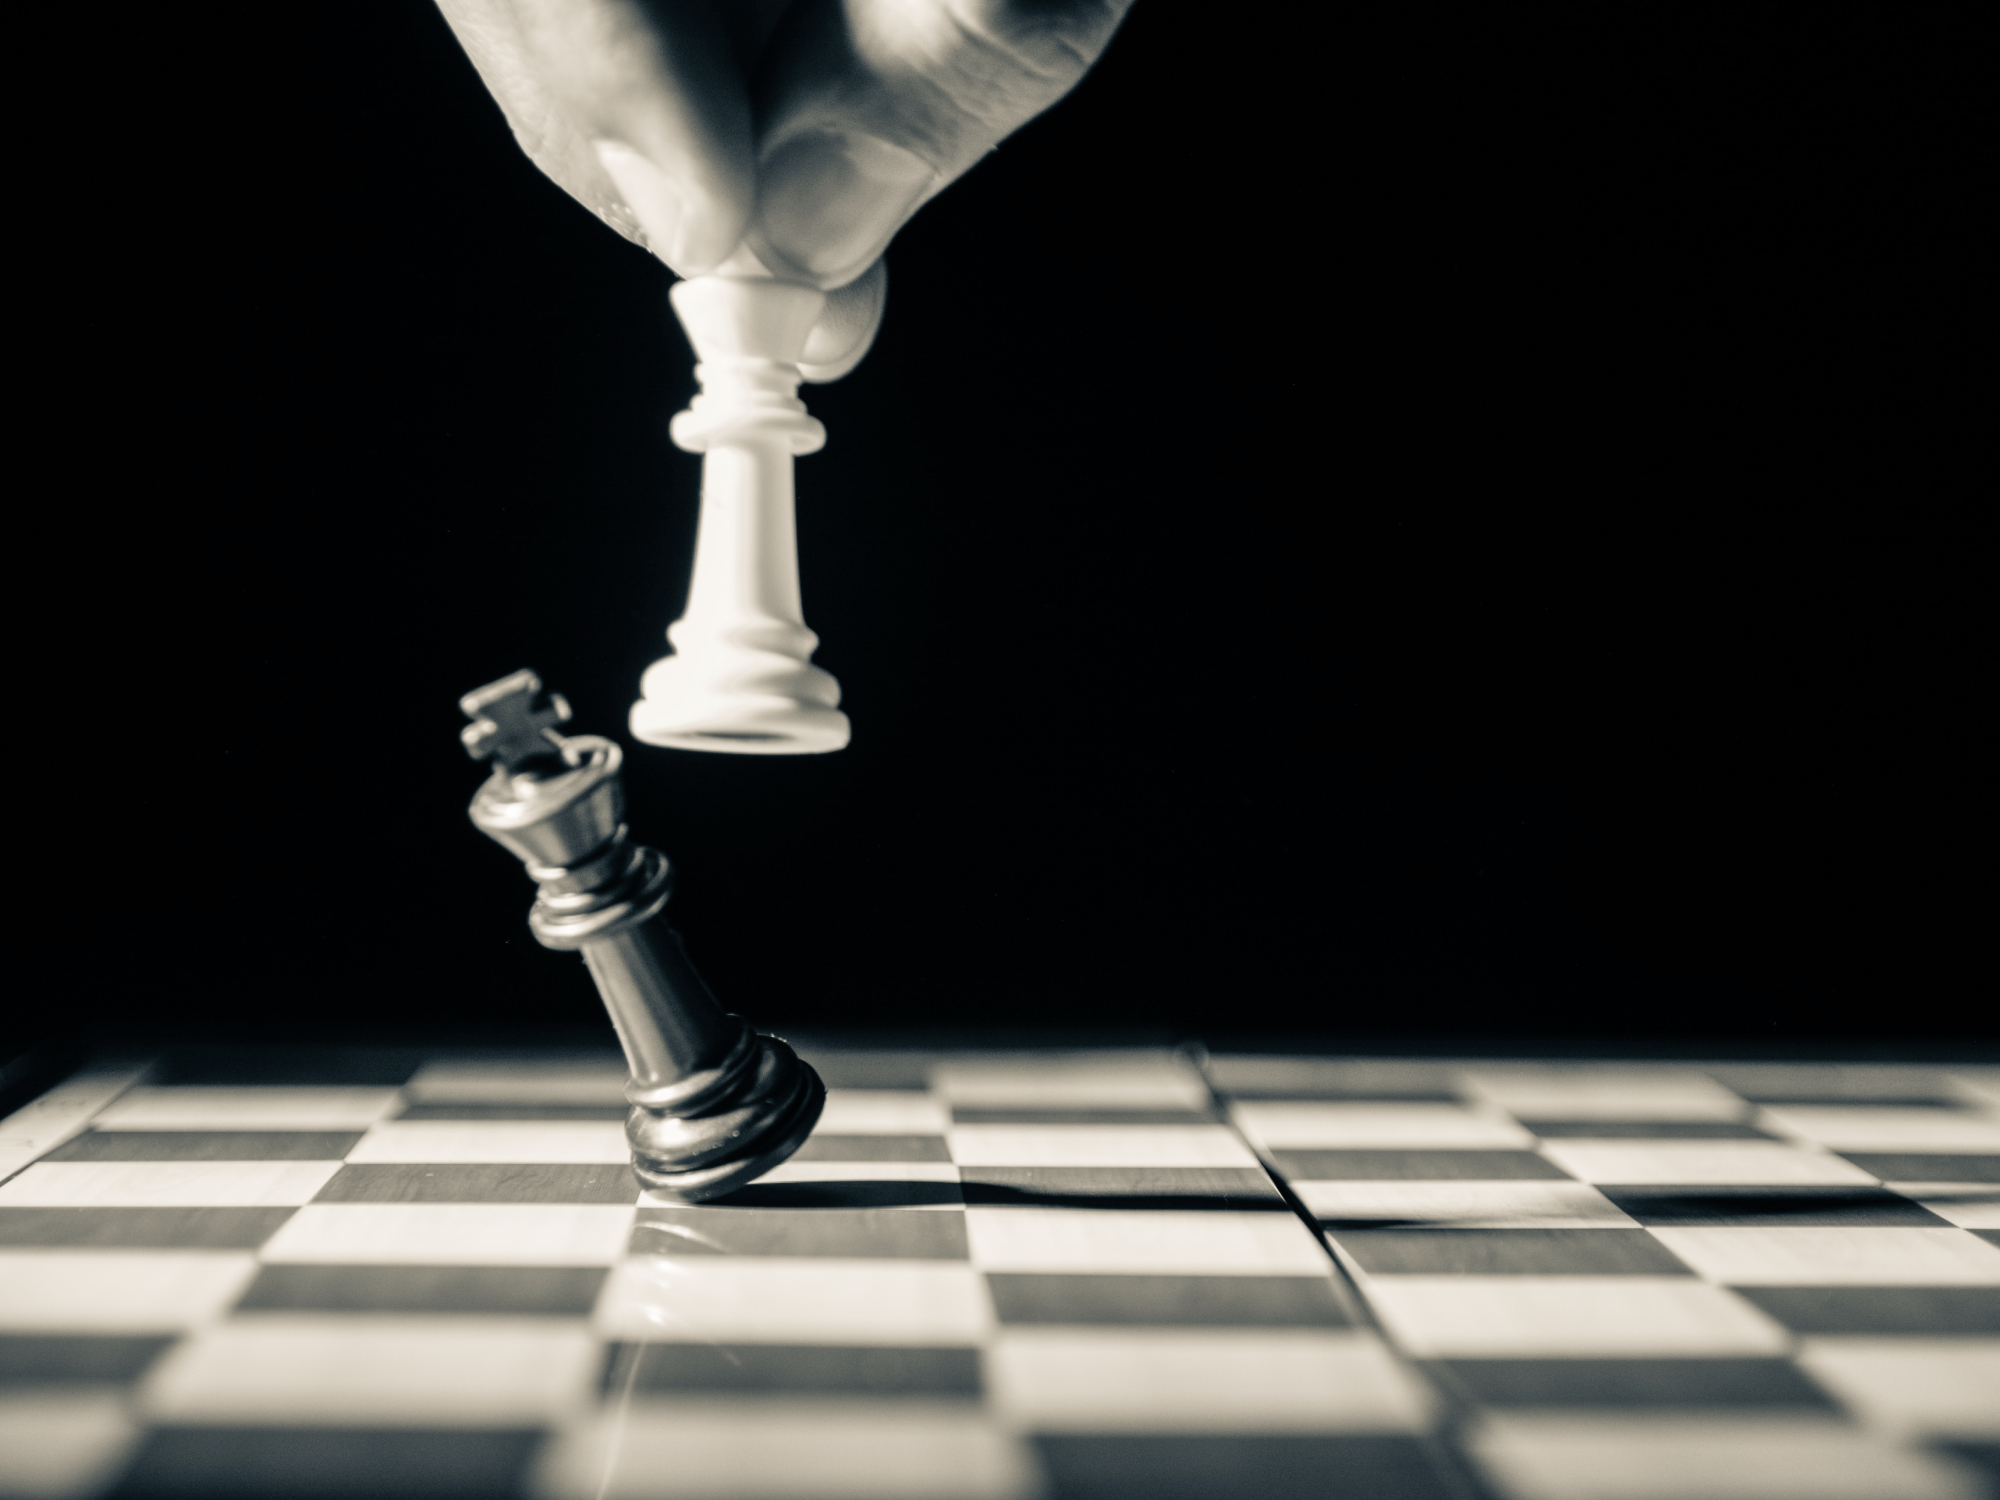 Svartvit bild med en schackpjäs som slår omkull kungen